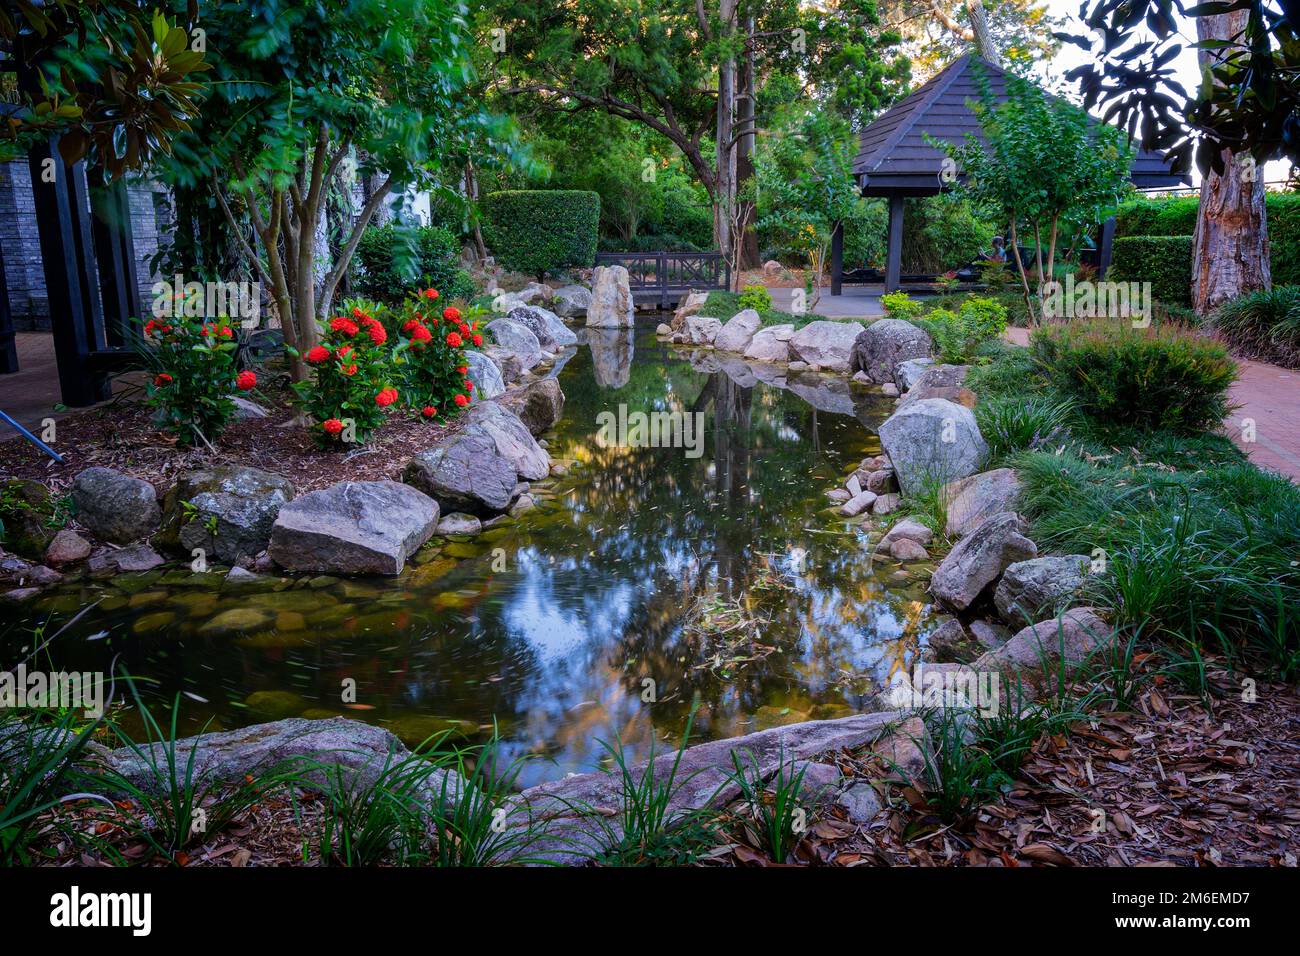 L'eau comprend un jardin formel d'inspiration chinoise, une porte de lune et un jardin zen. Hervey Bay Botanic Gardens, Urangan Hervey Bay Queensland Australie Banque D'Images